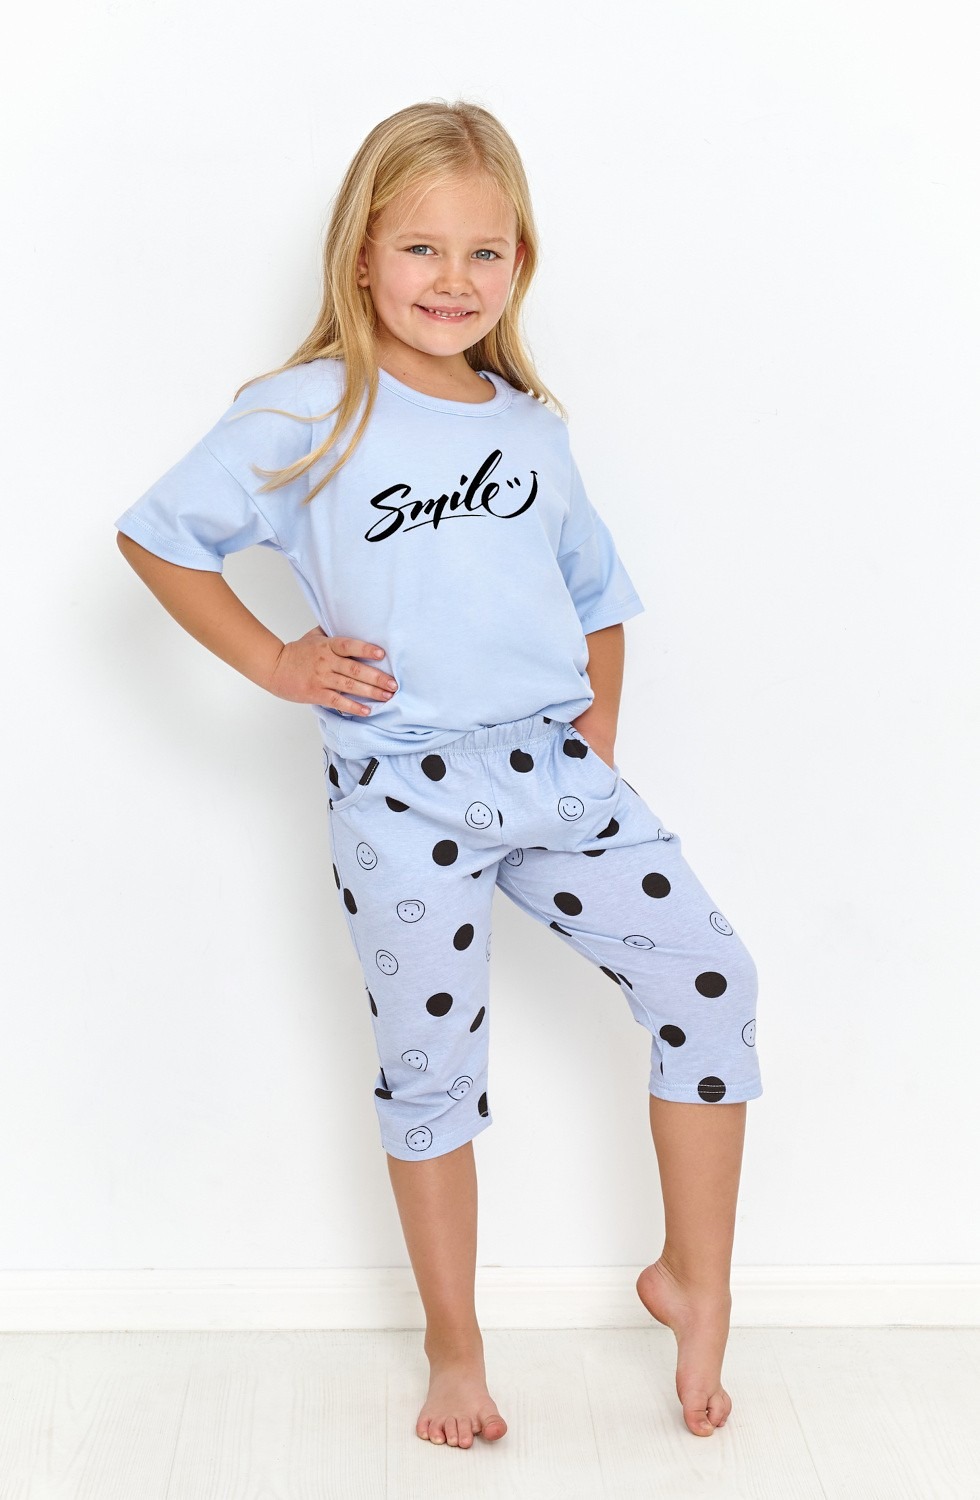 Dívčí pyžamo Taro 2903 kr/r Chloe 104-116 L23 modrá 110